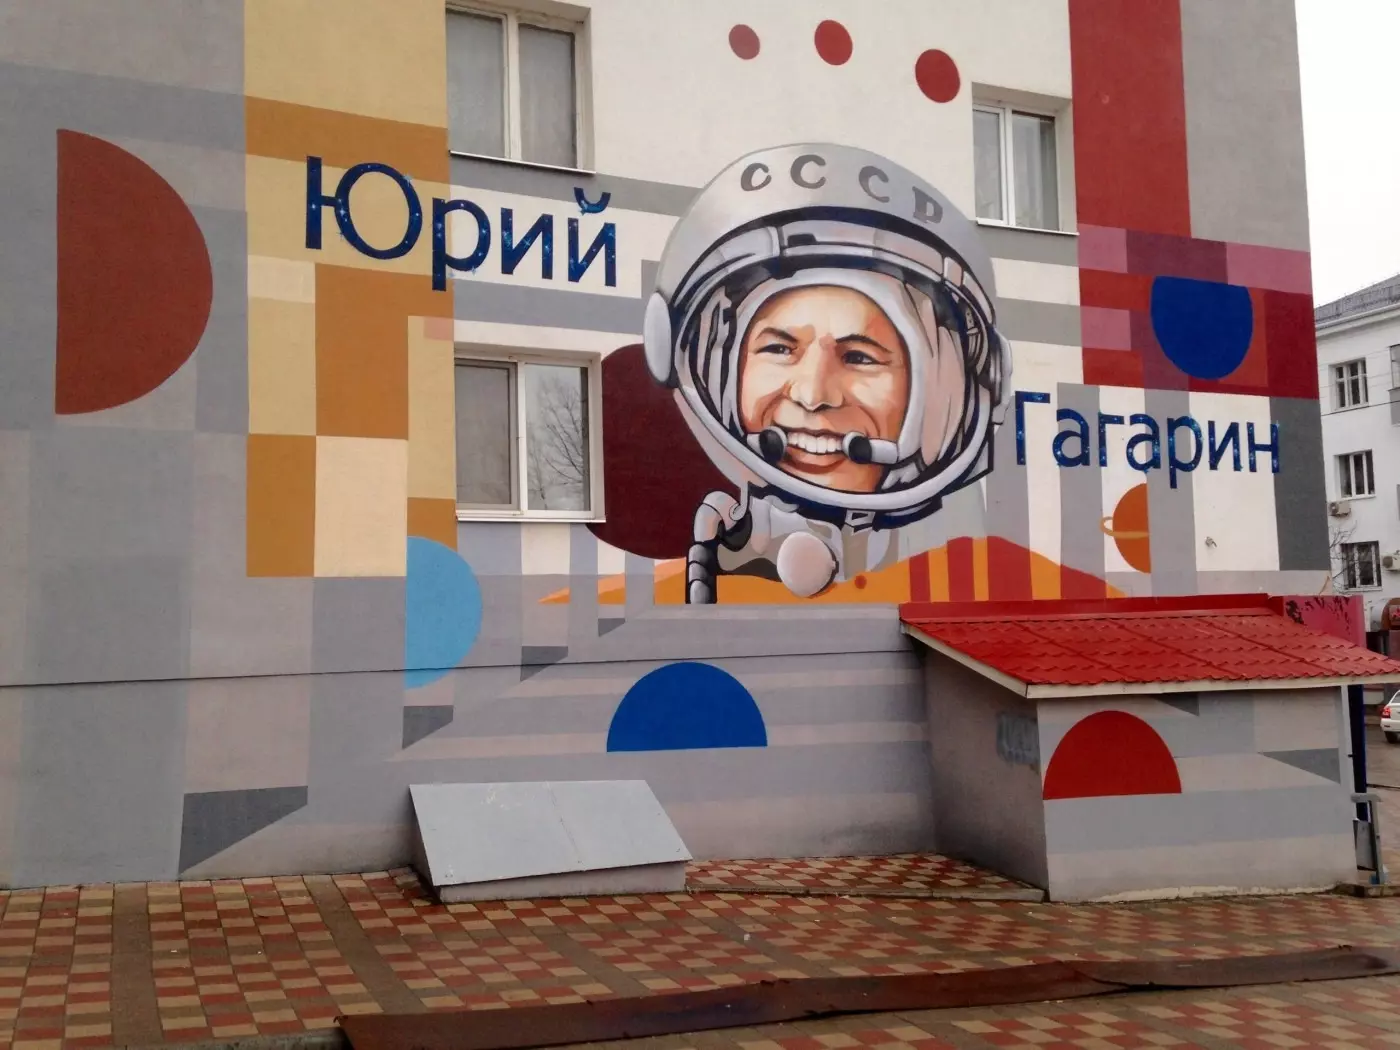 Граффити с Юрием Гагариным на фасаде дома в Белгороде